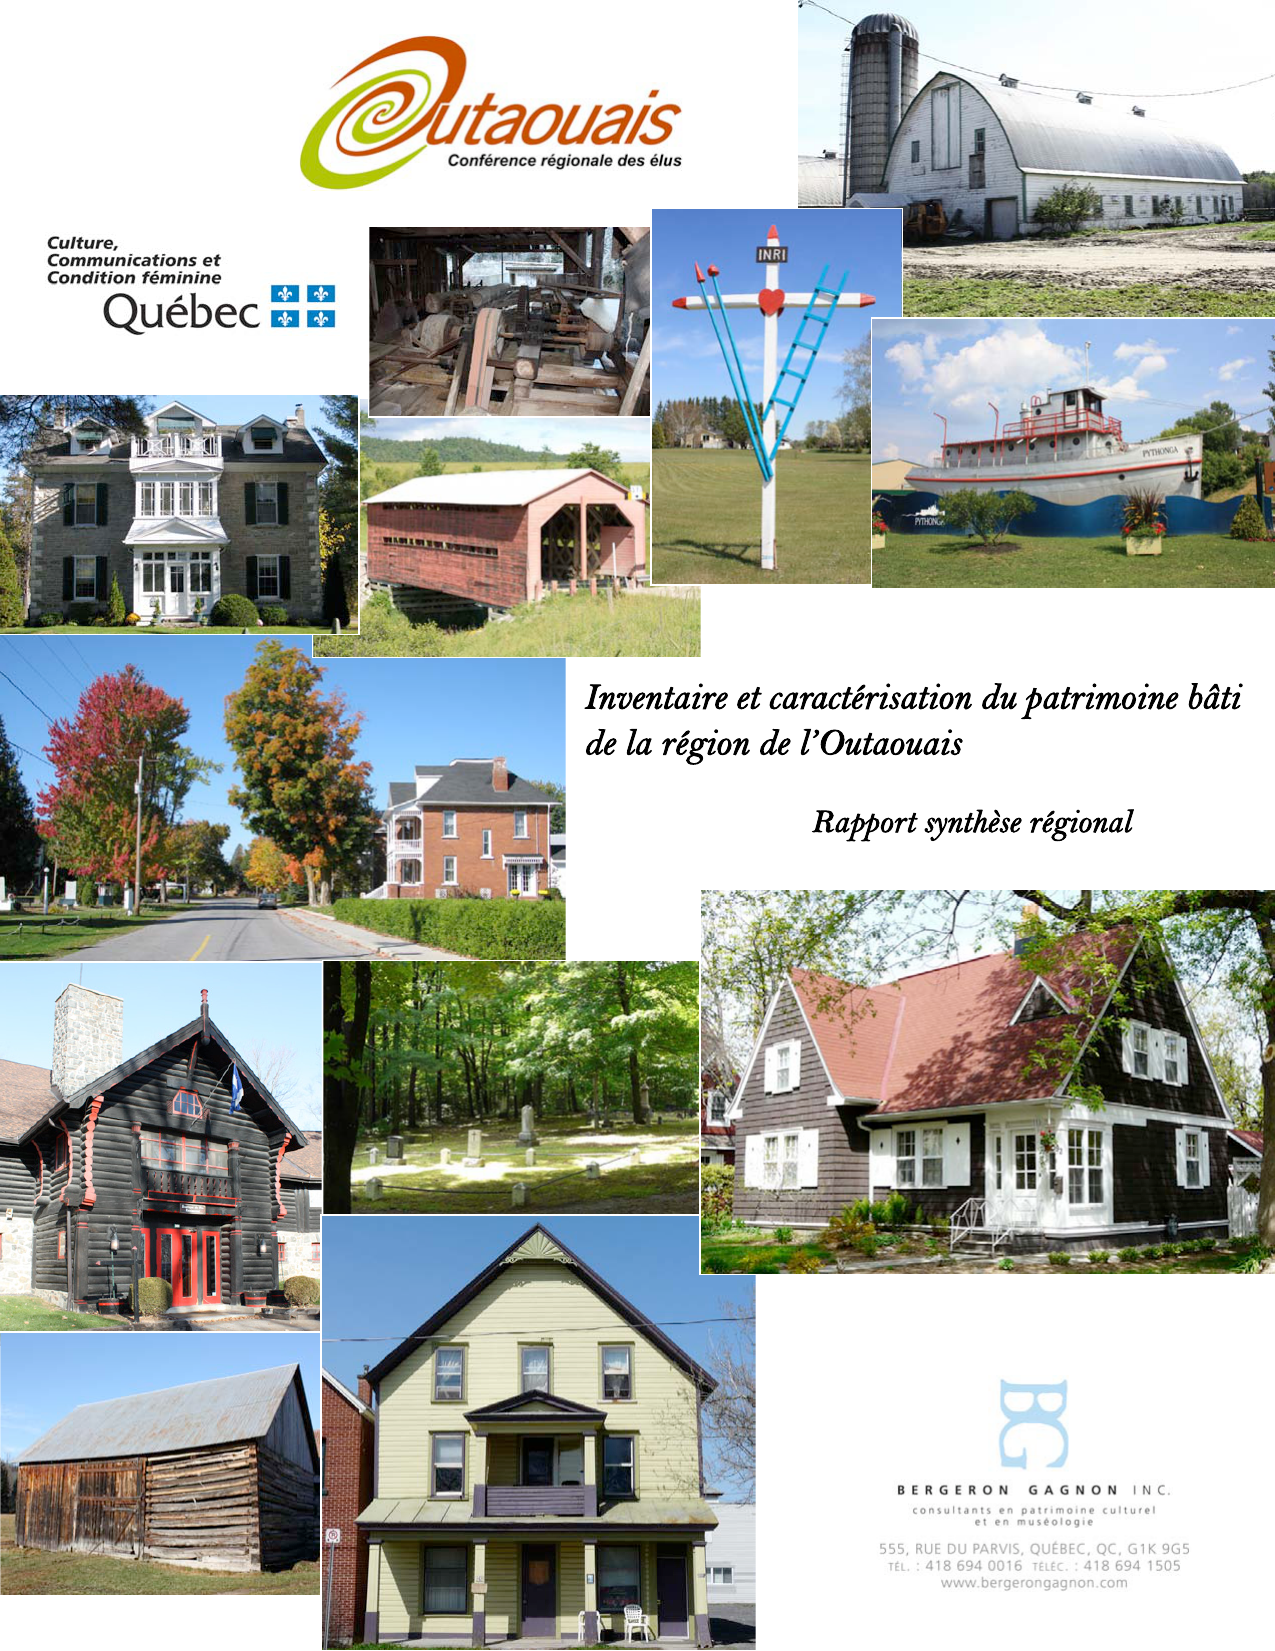 La Conférence des Préfets de l'Outaouais (CPO) - Concertation régionale